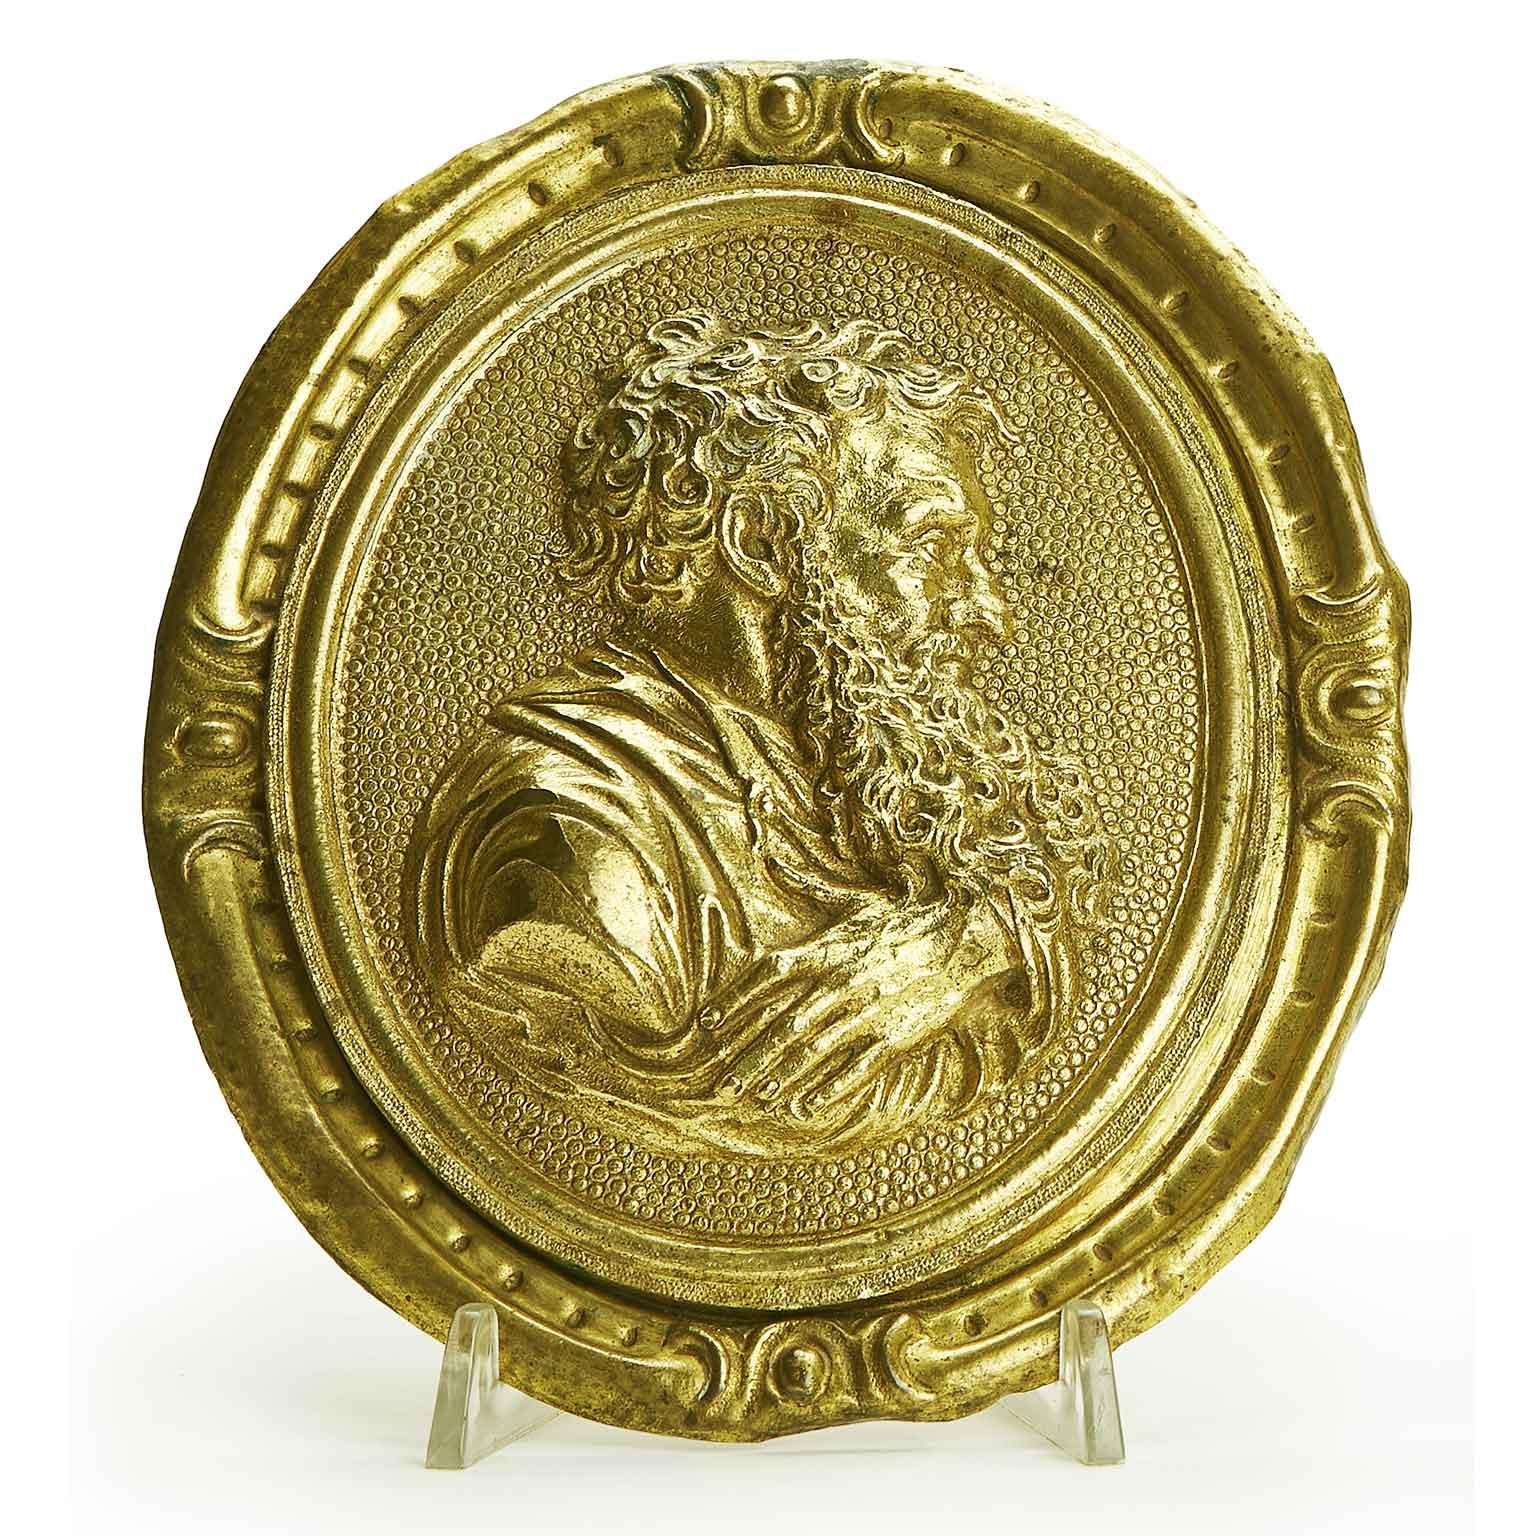 Paire de plaques en bronze doré au mercure avec des profils de saints d'origine italienne de la première moitié du XVIIIe siècle, une paire de plaques dorées du XVIIIe siècle, de forme ovale composée de deux éléments superposés ; le profil moulé et